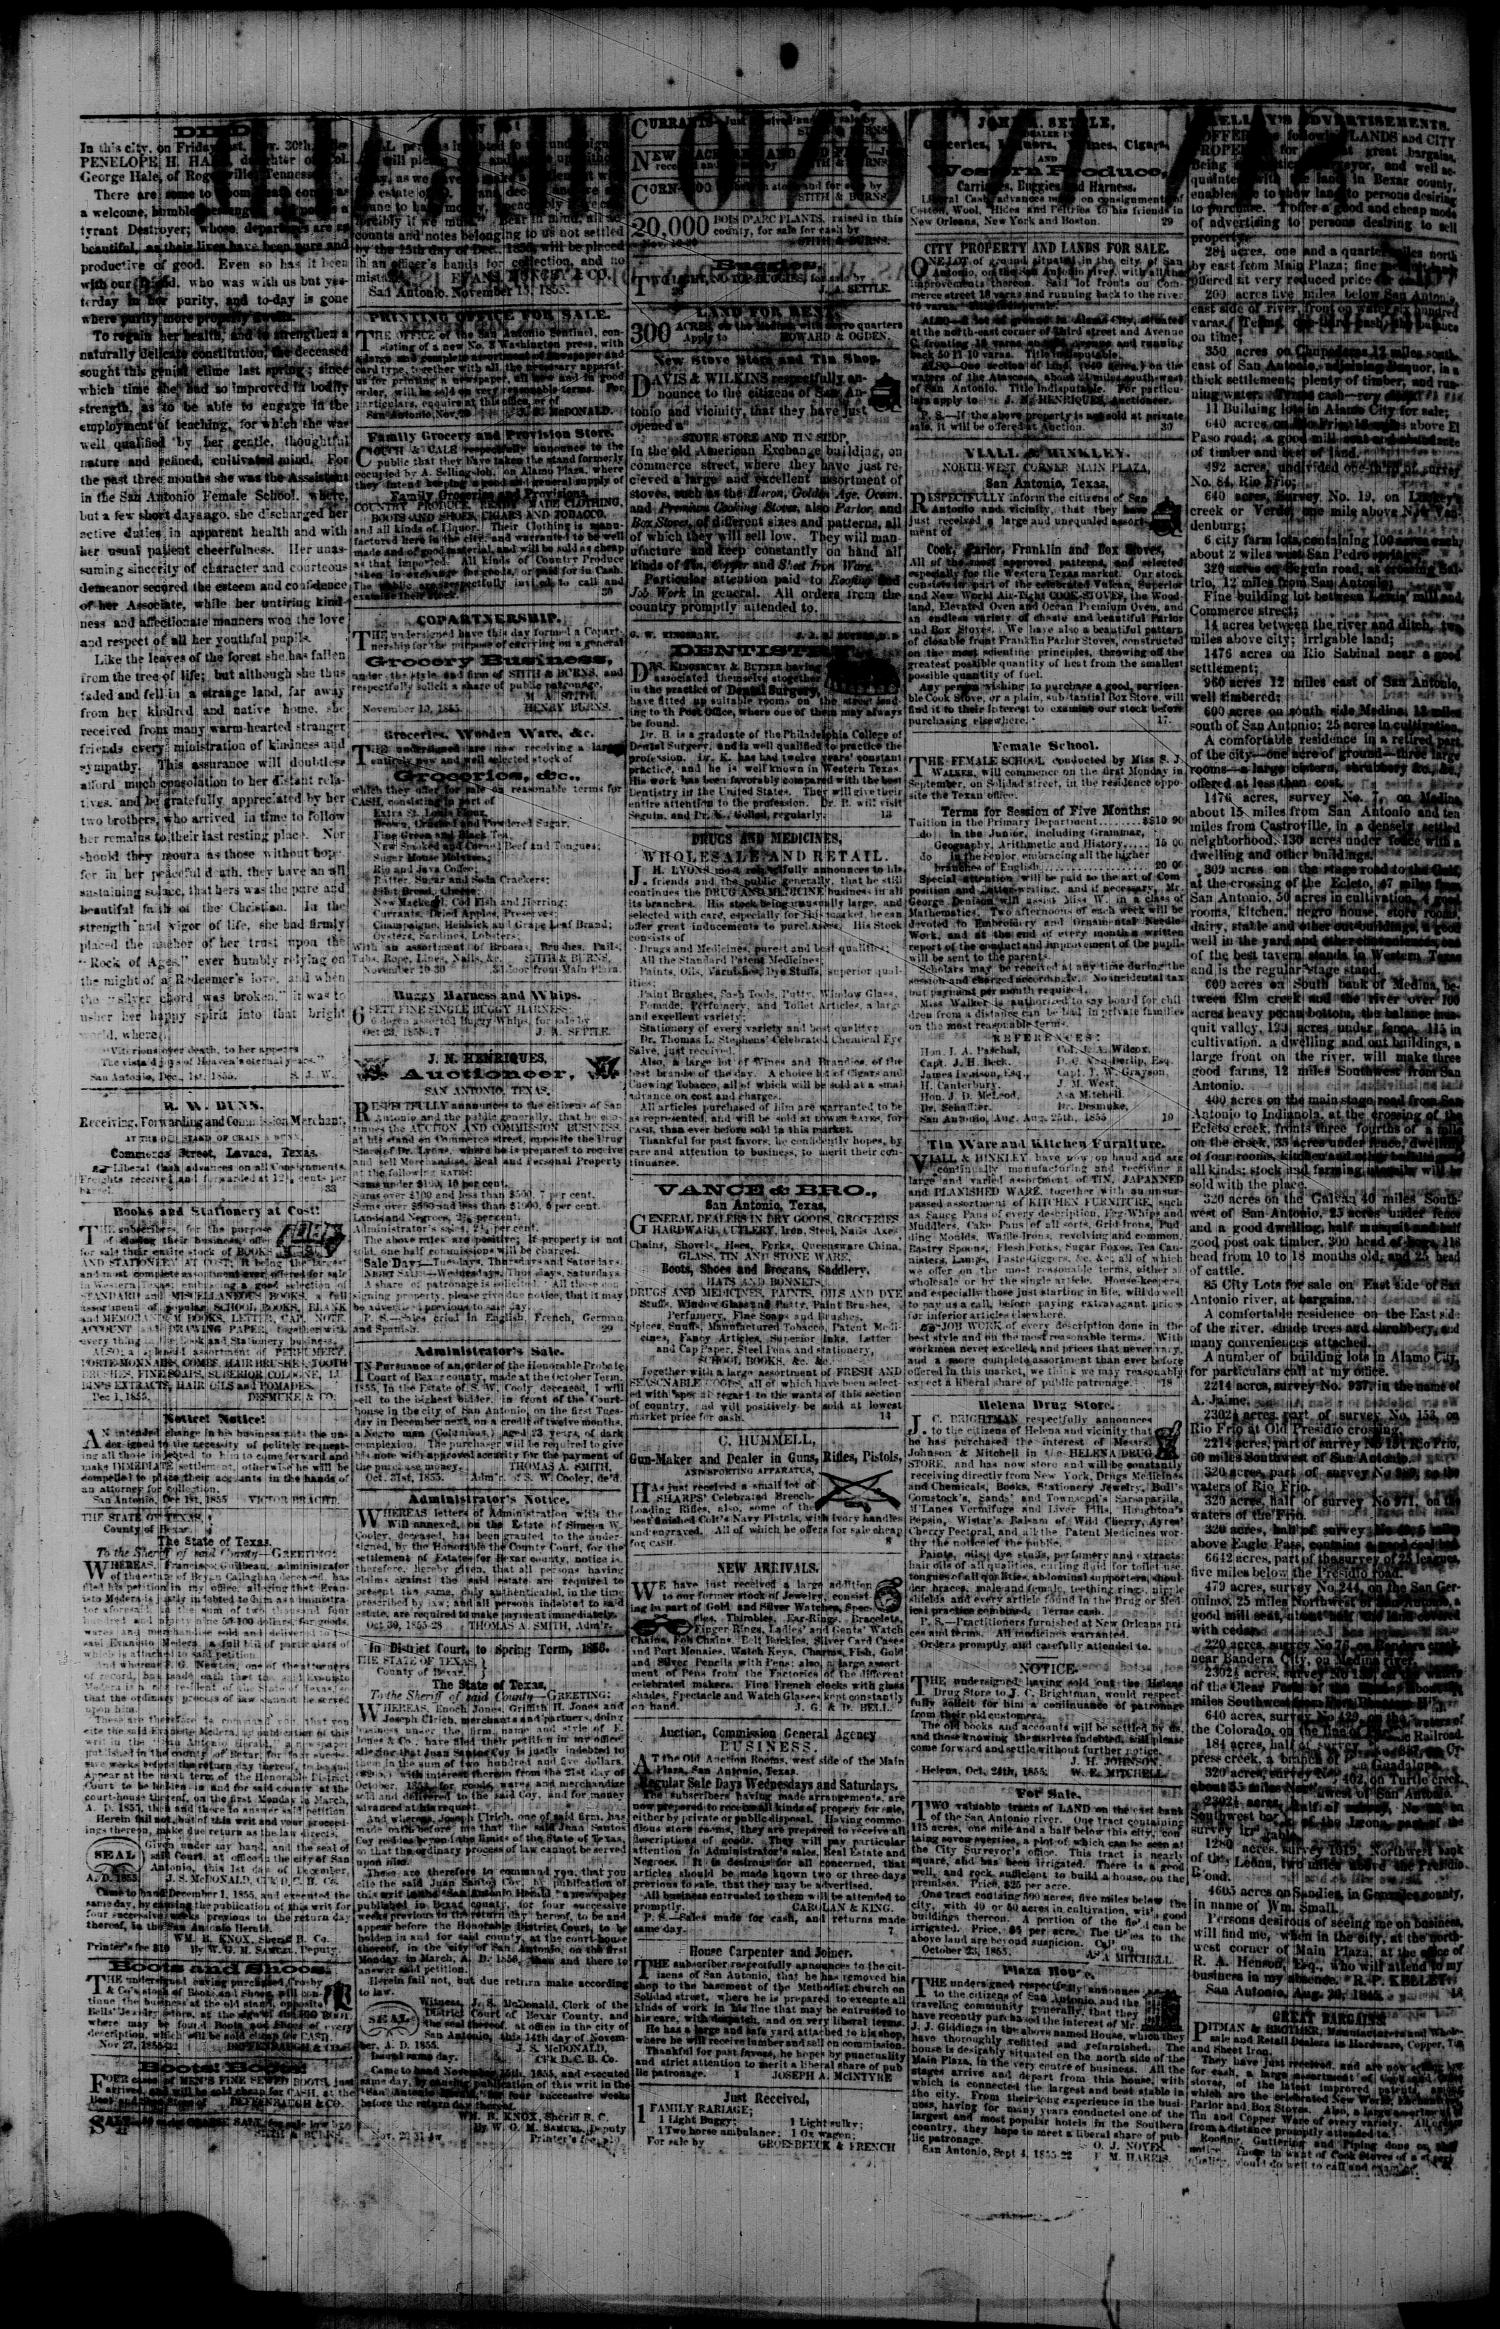 San Antonio Herald San Antonio Tex Vol 1 No 33 Ed 1 Wednesday December 5 1855 Page 2 Of 2 The Portal To Texas History